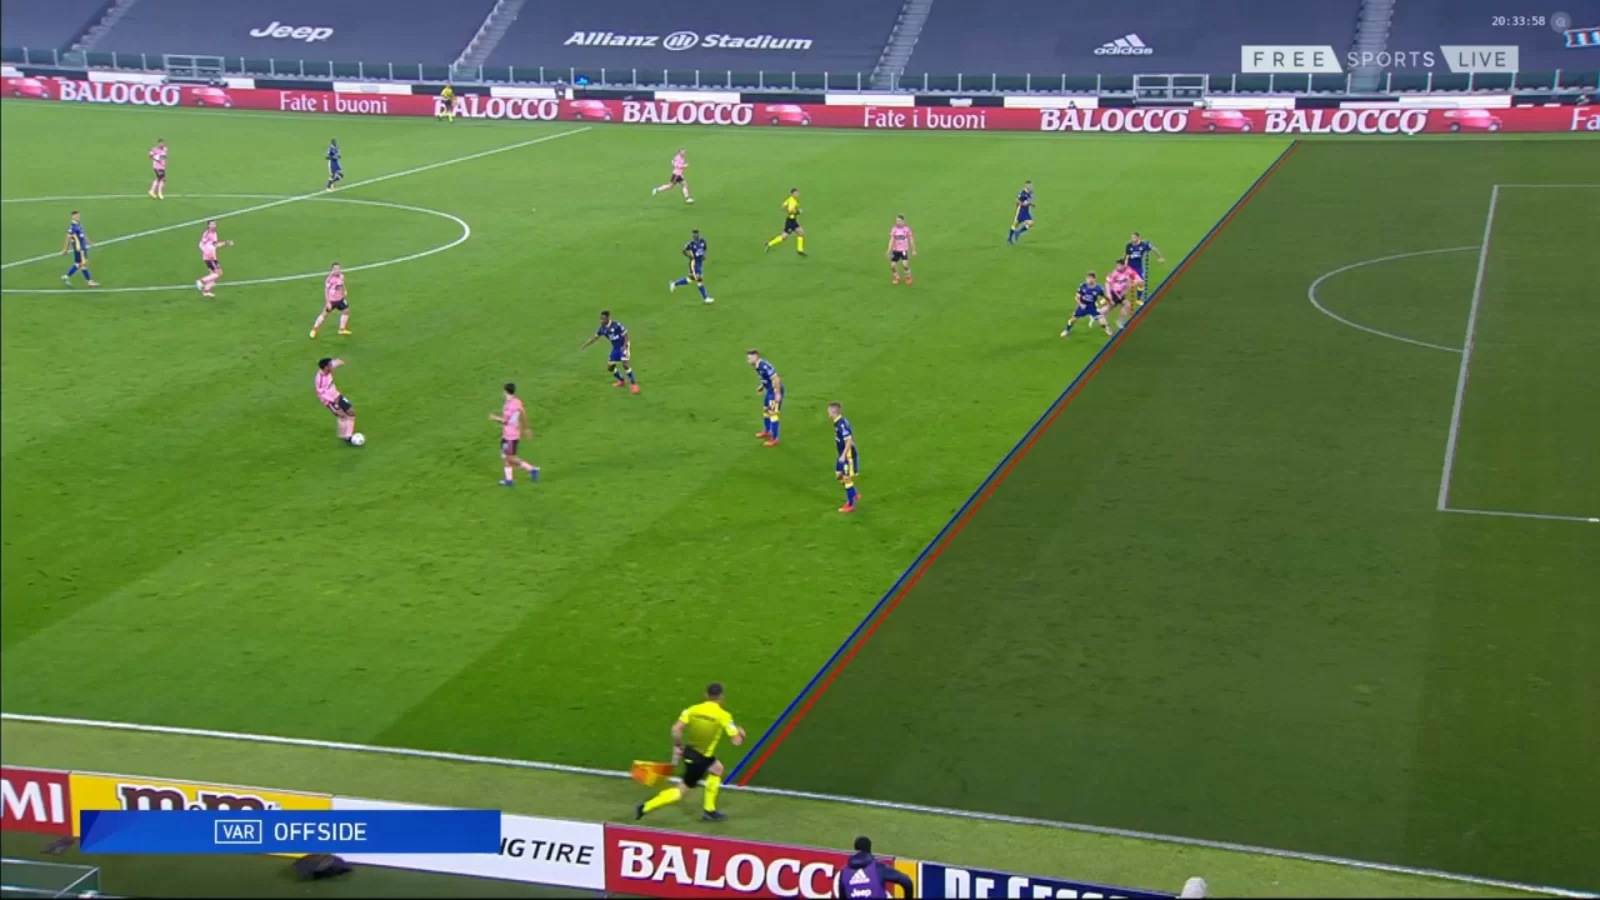 La moviola di Juventus-Hellas Verona: giusto il fuorigioco di Morata